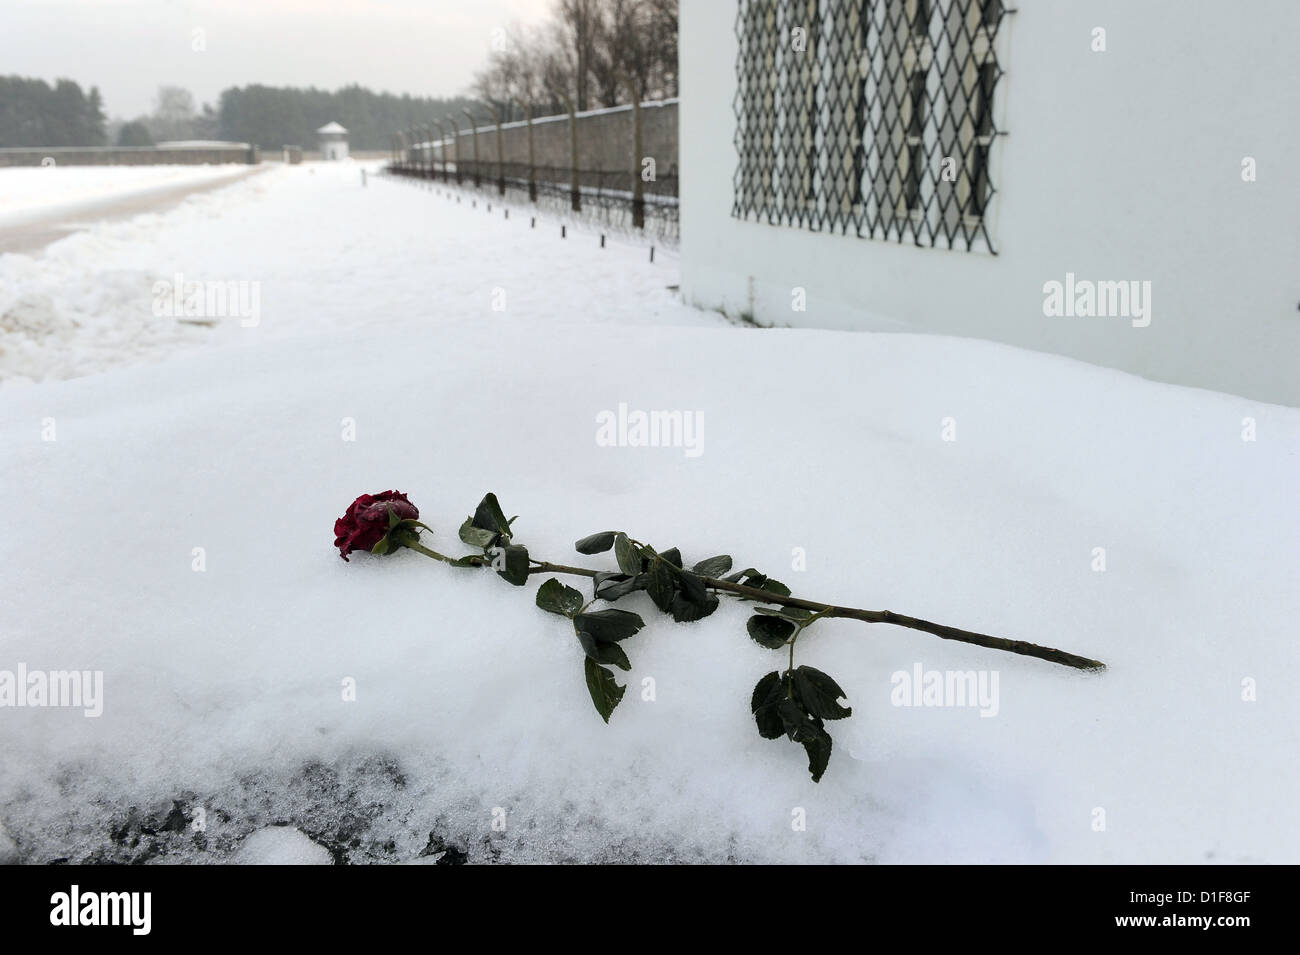 Una rosa è prevista nei locali dell'ex campo di concentramento Sachsenhausen a Oranienburg, Germania, 15 dicembre 2012. Il Consiglio centrale del tedesco Sinti e Roma commemorato la deportazione di 23000 Sinti e Rom nel campo di concentramento di Auschwitz. Foto: Bernd Settnik Foto Stock